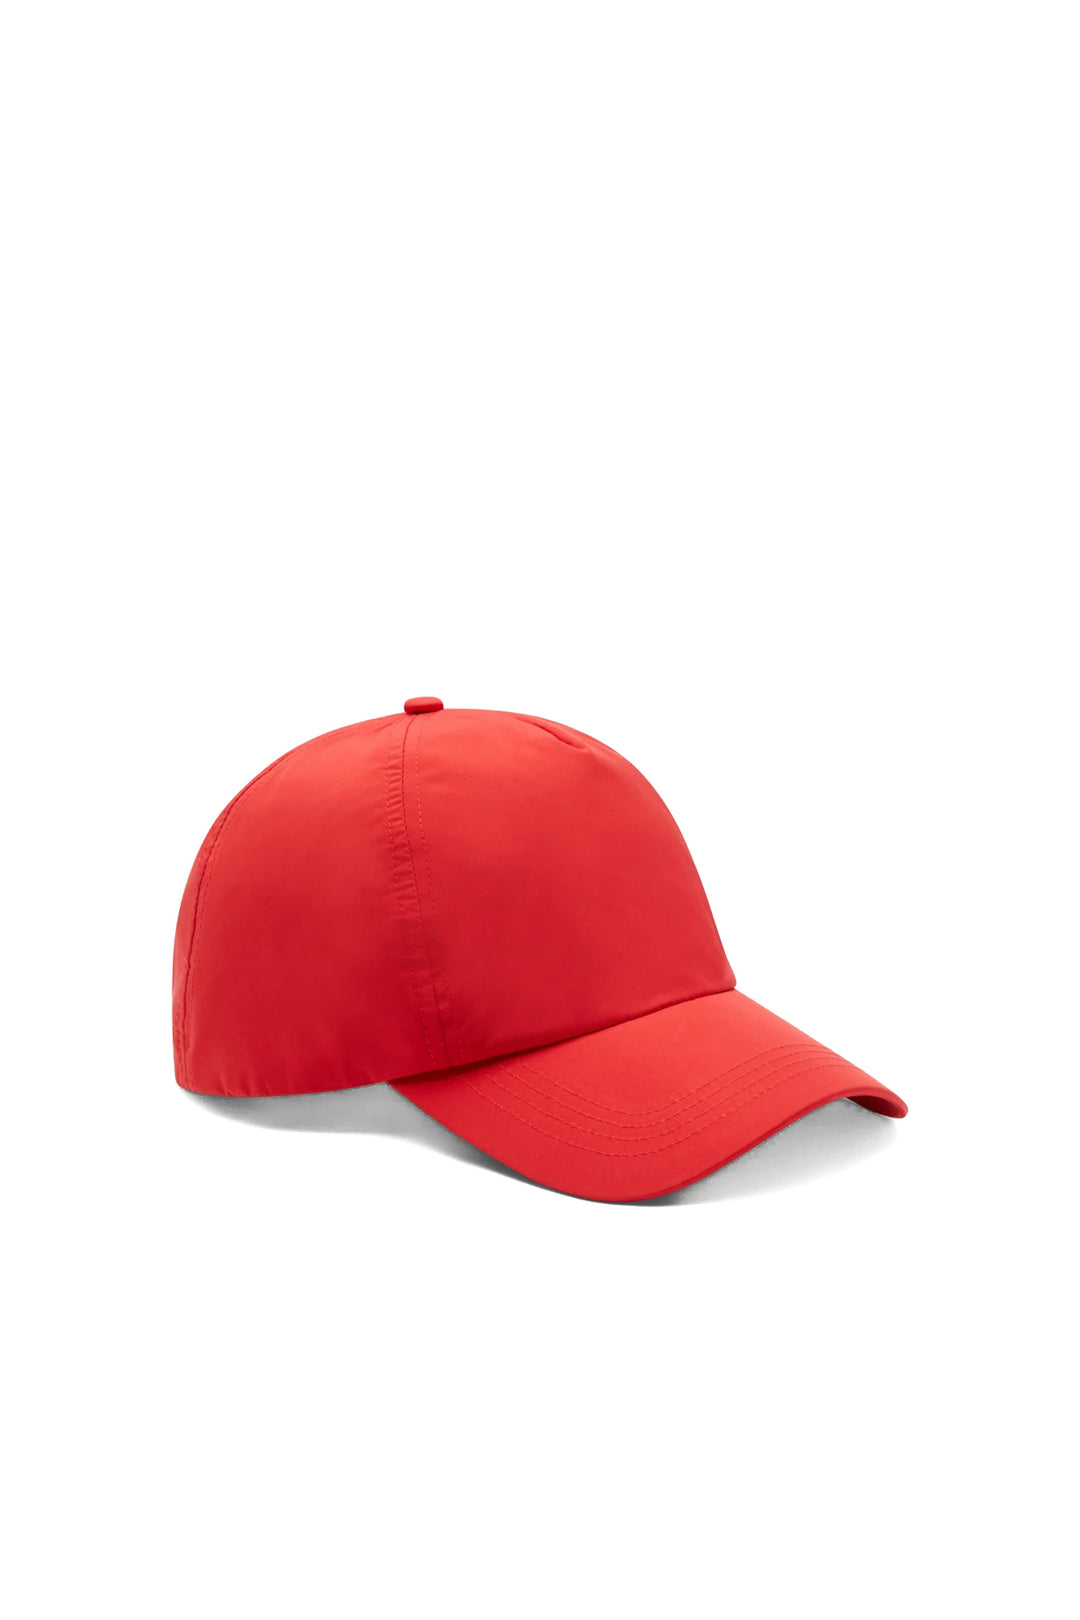 SAVE THE DUCK Cappello da baseball rosso “CLEBER” - Mancinelli 1954